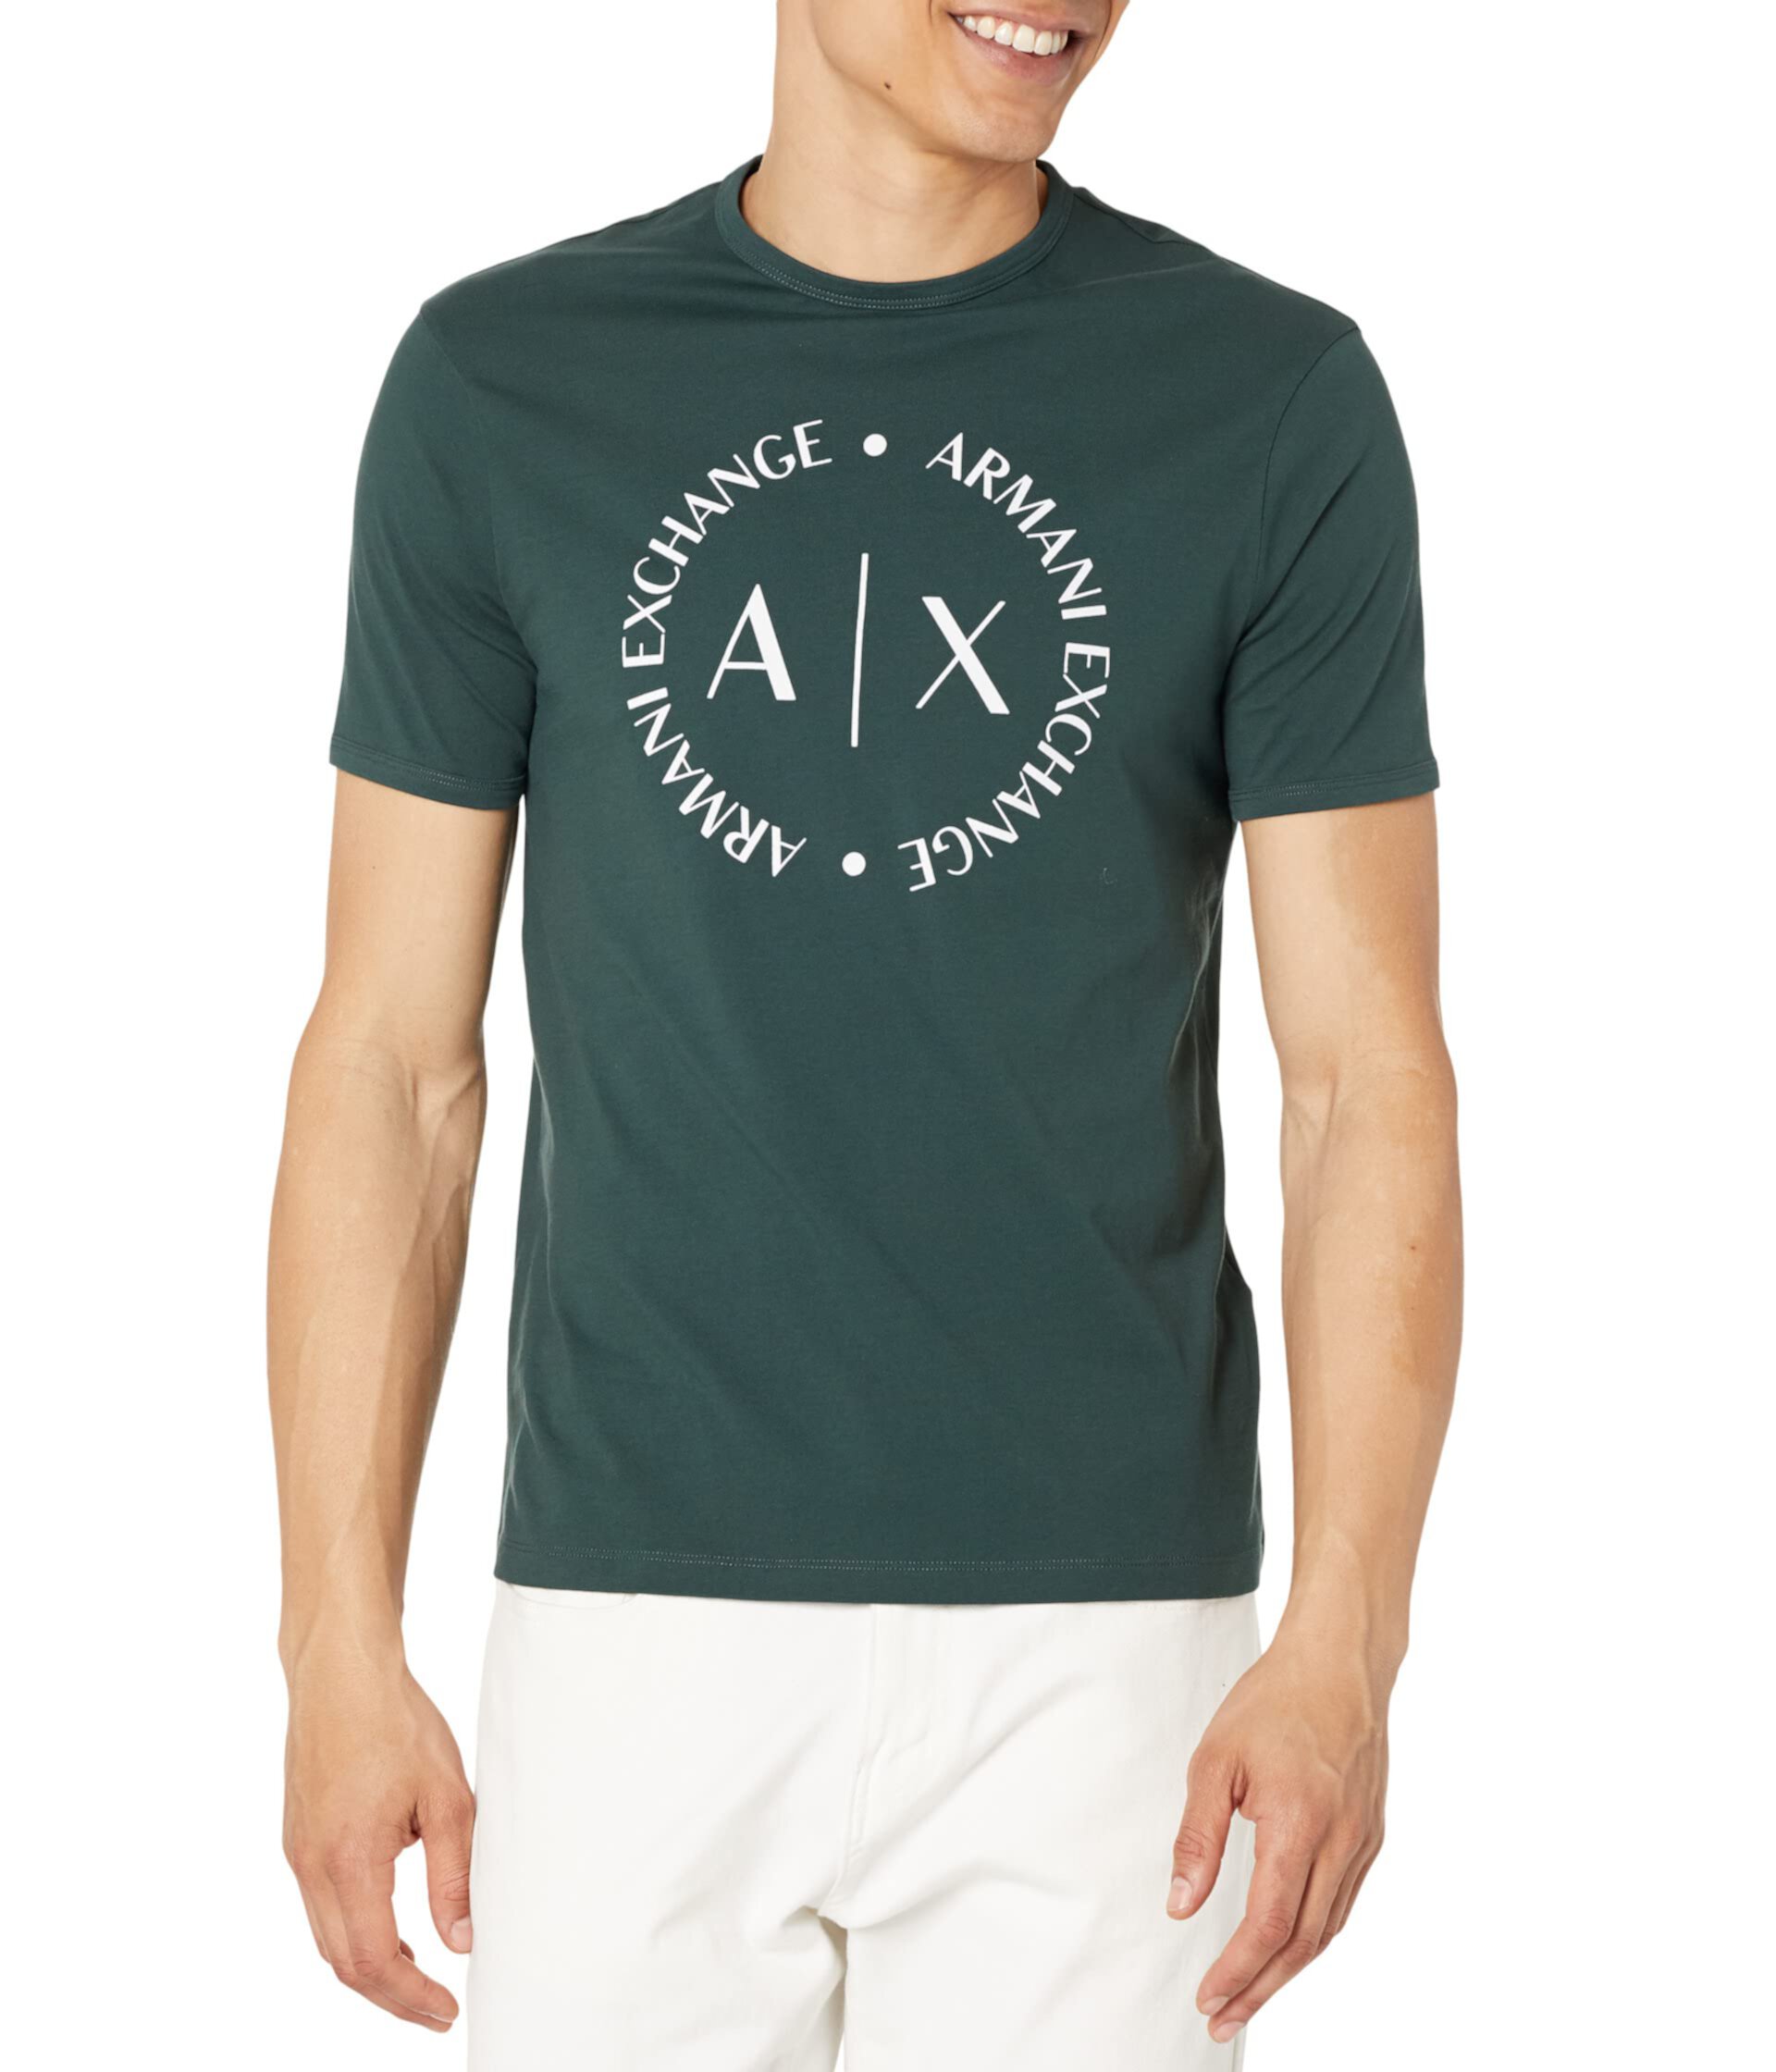 Мужская хлопковая футболка AX ARMANI EXCHANGE с логотипом AX ARMANI EXCHANGE